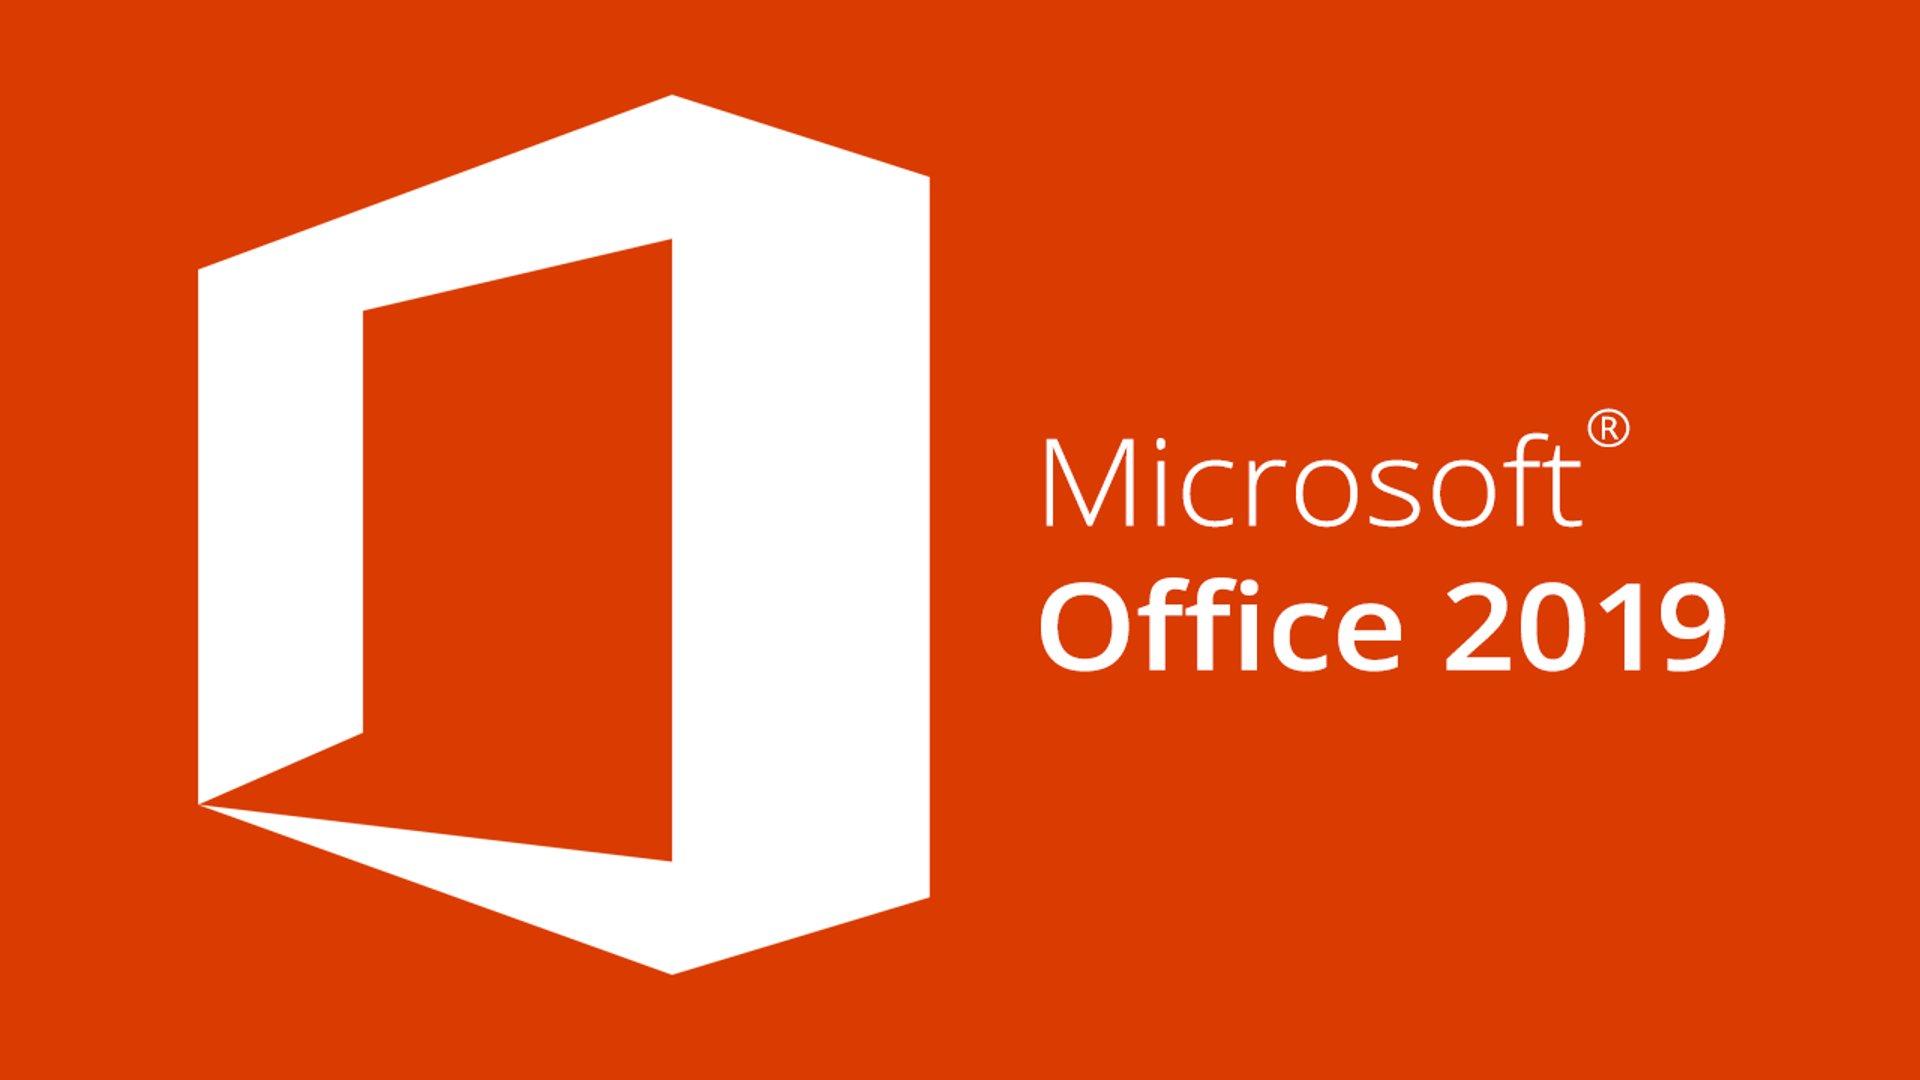 Microsoft Office 2019 Coming to ASU | ASU Enterprise Technology